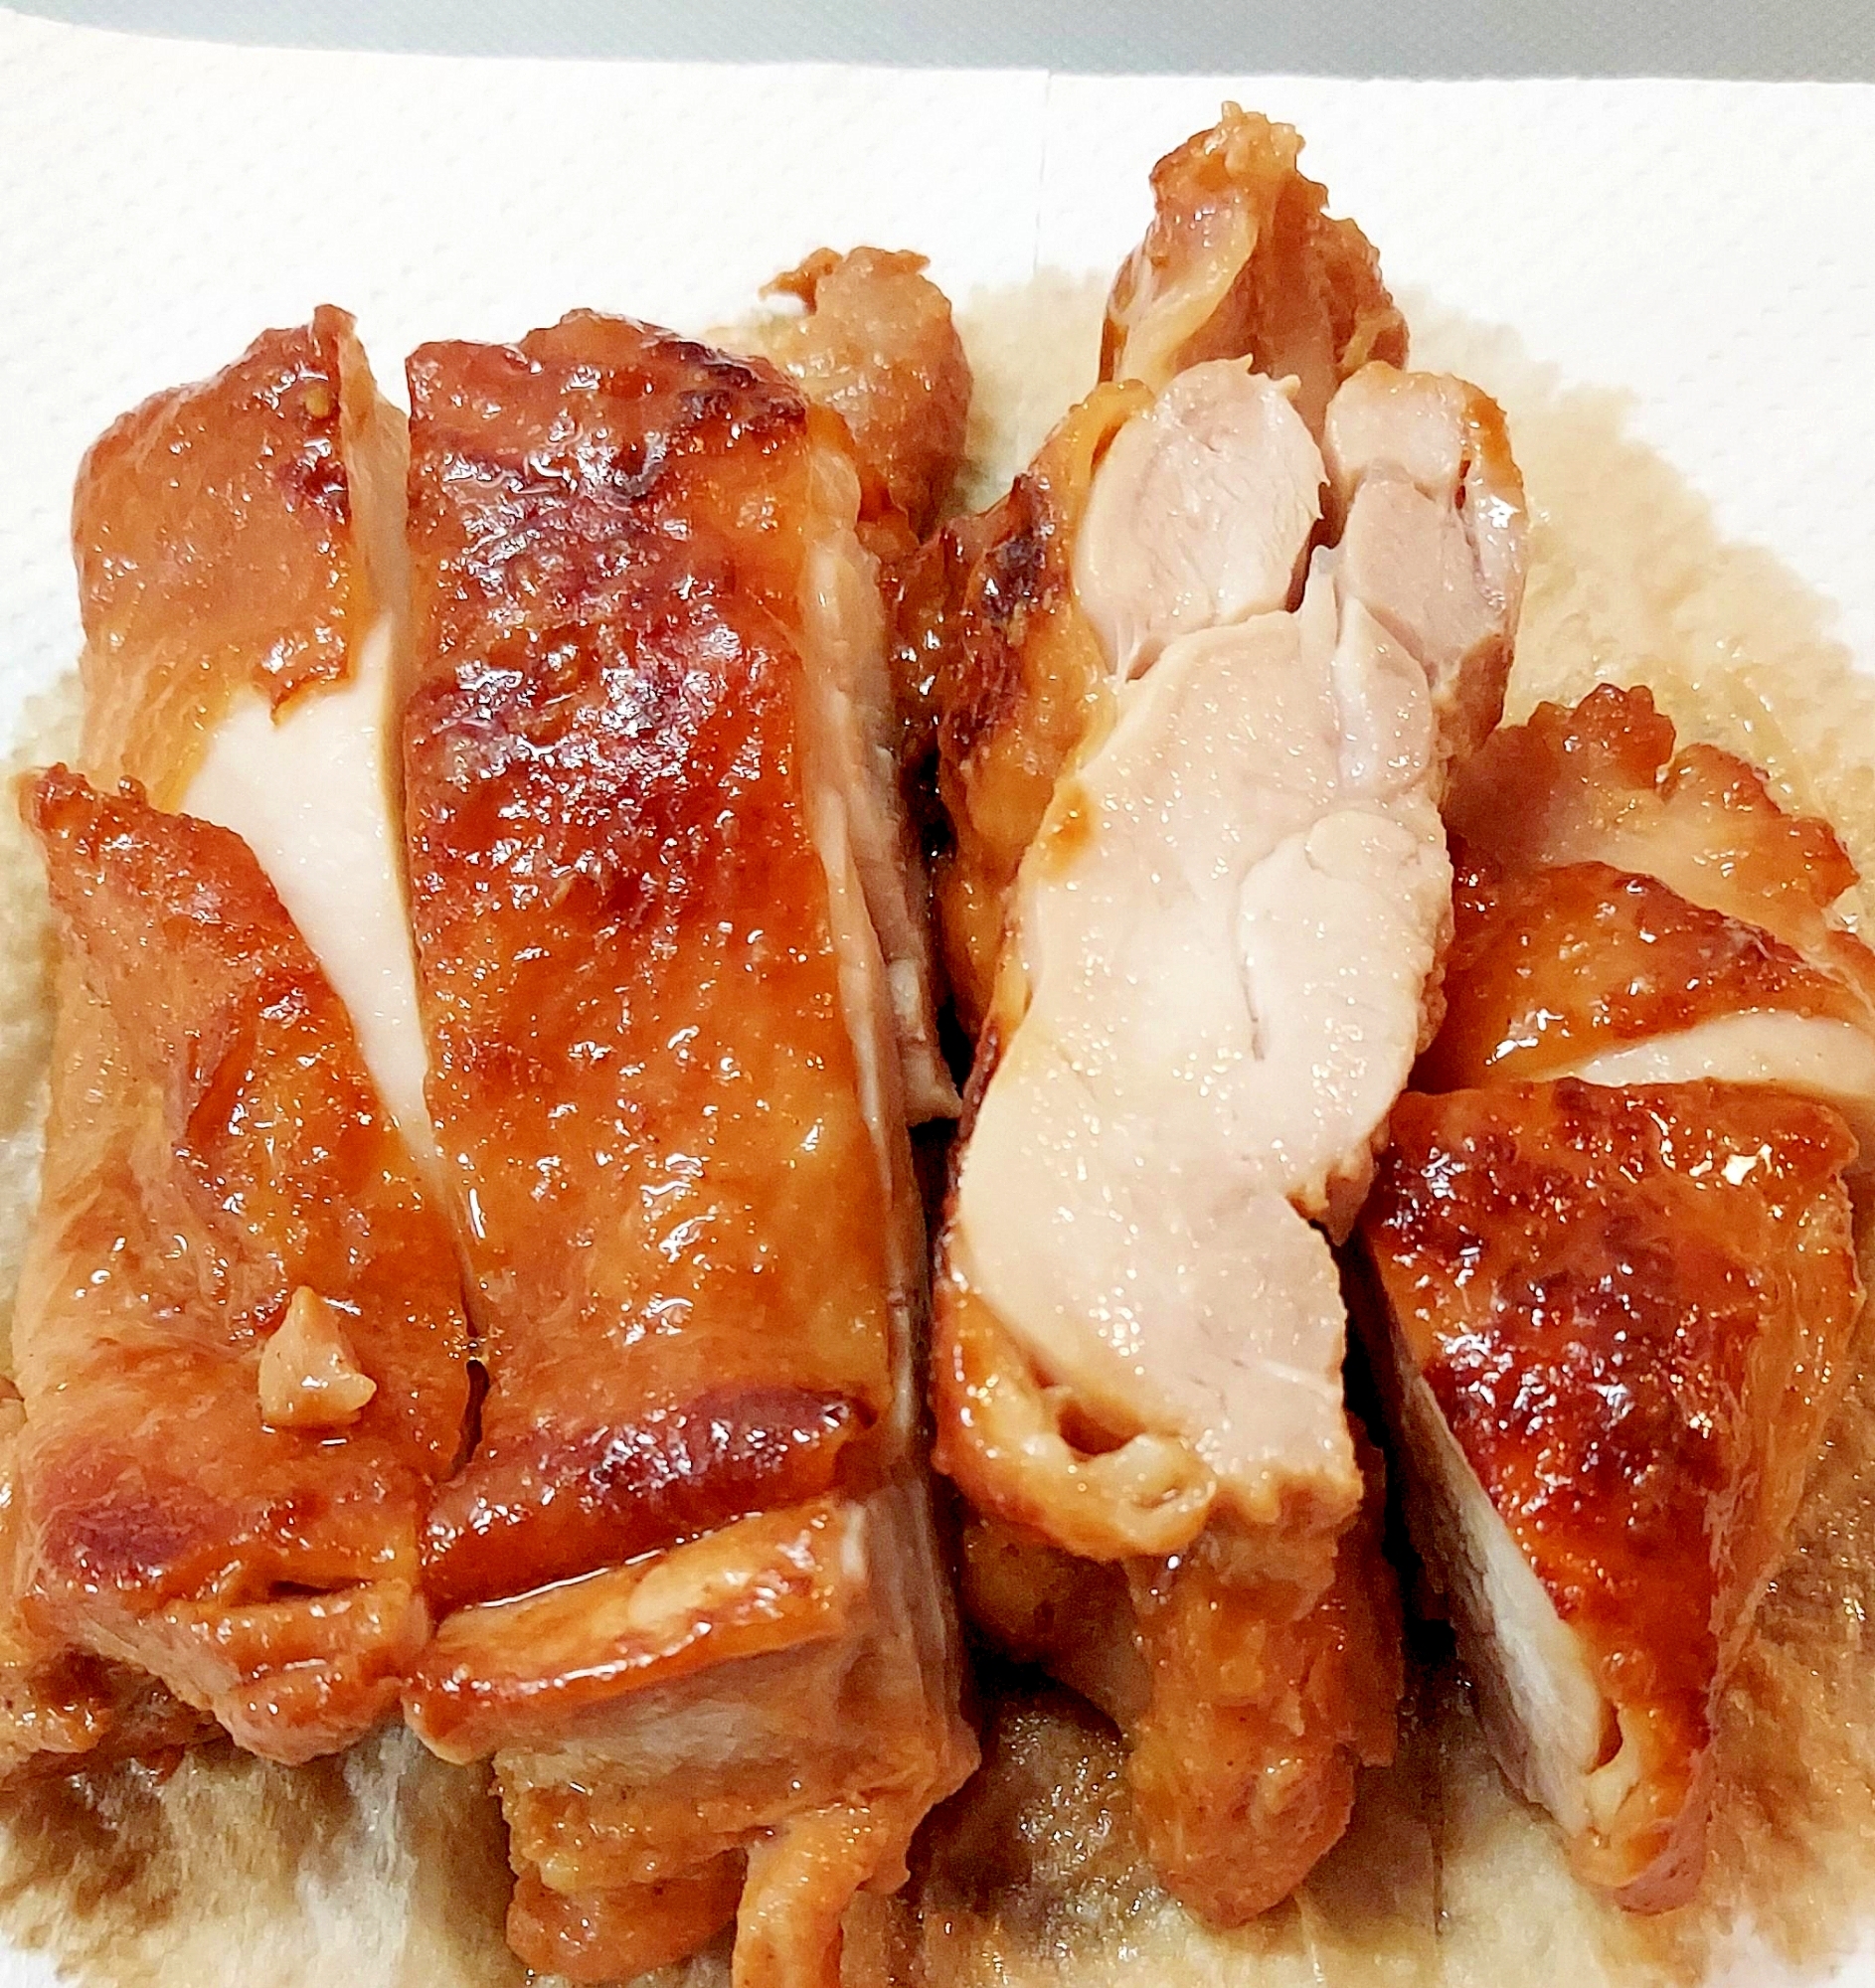 楽チン鶏の西京焼き